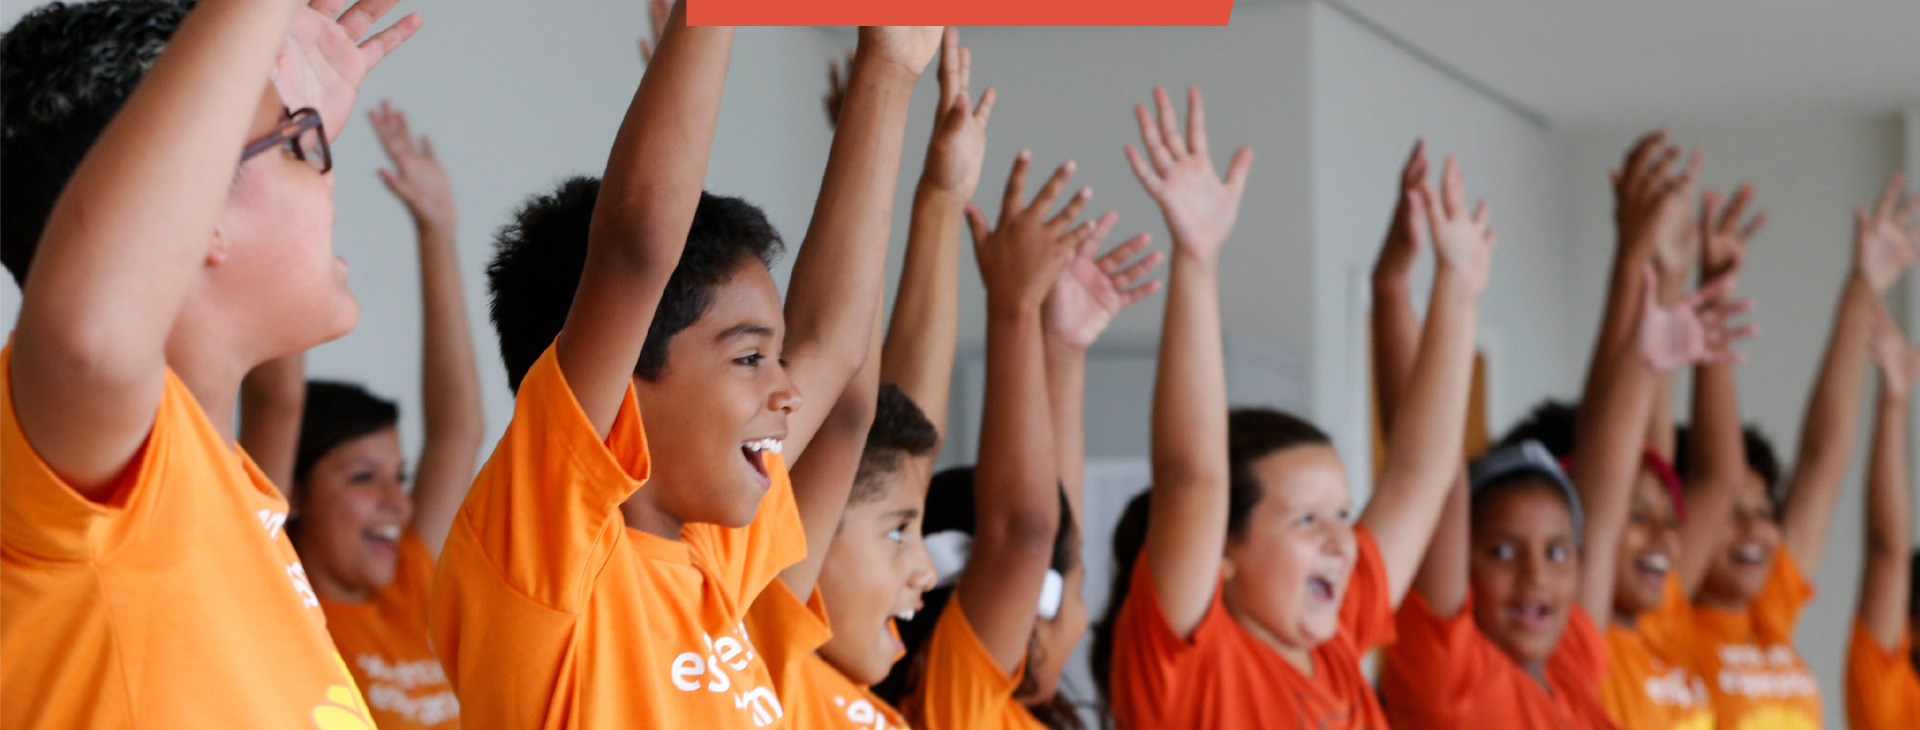 Grupo de crianças, vestindo camiseta laranja, comemorando felizes com as mãos esticadas para cima